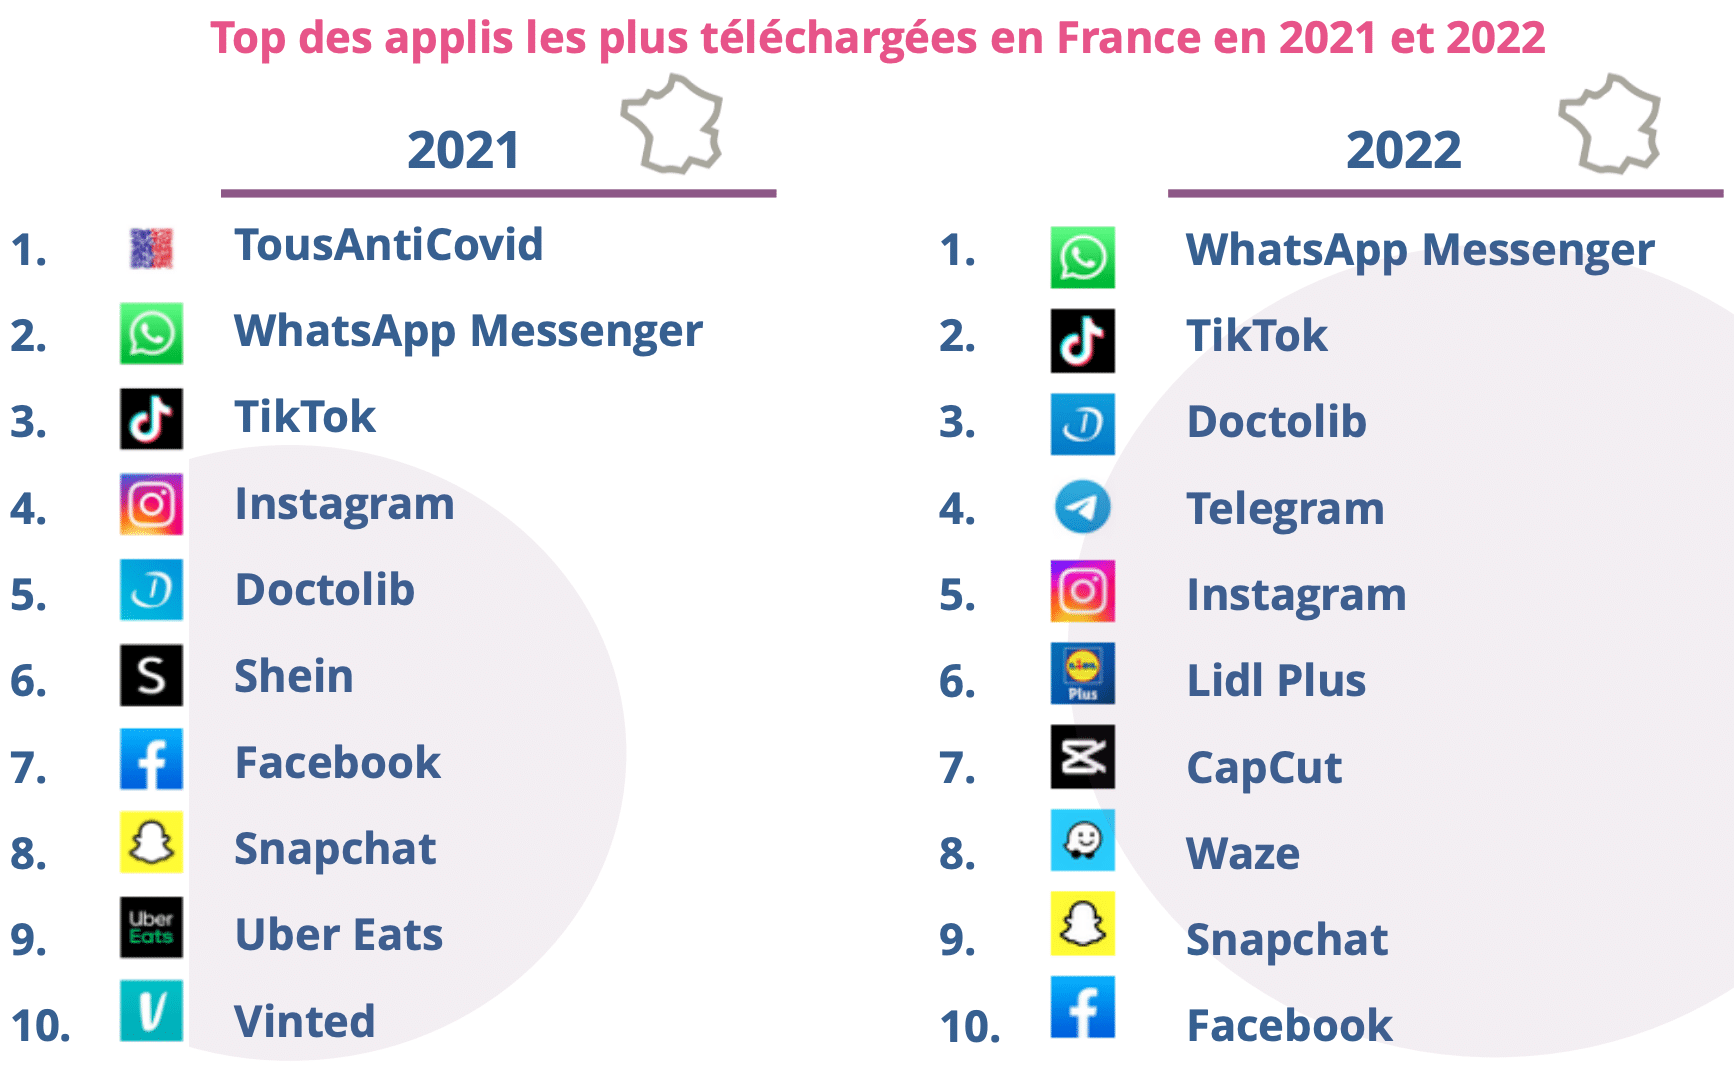 Top des applis les plus téléchargées en France en 2021 et 2022.